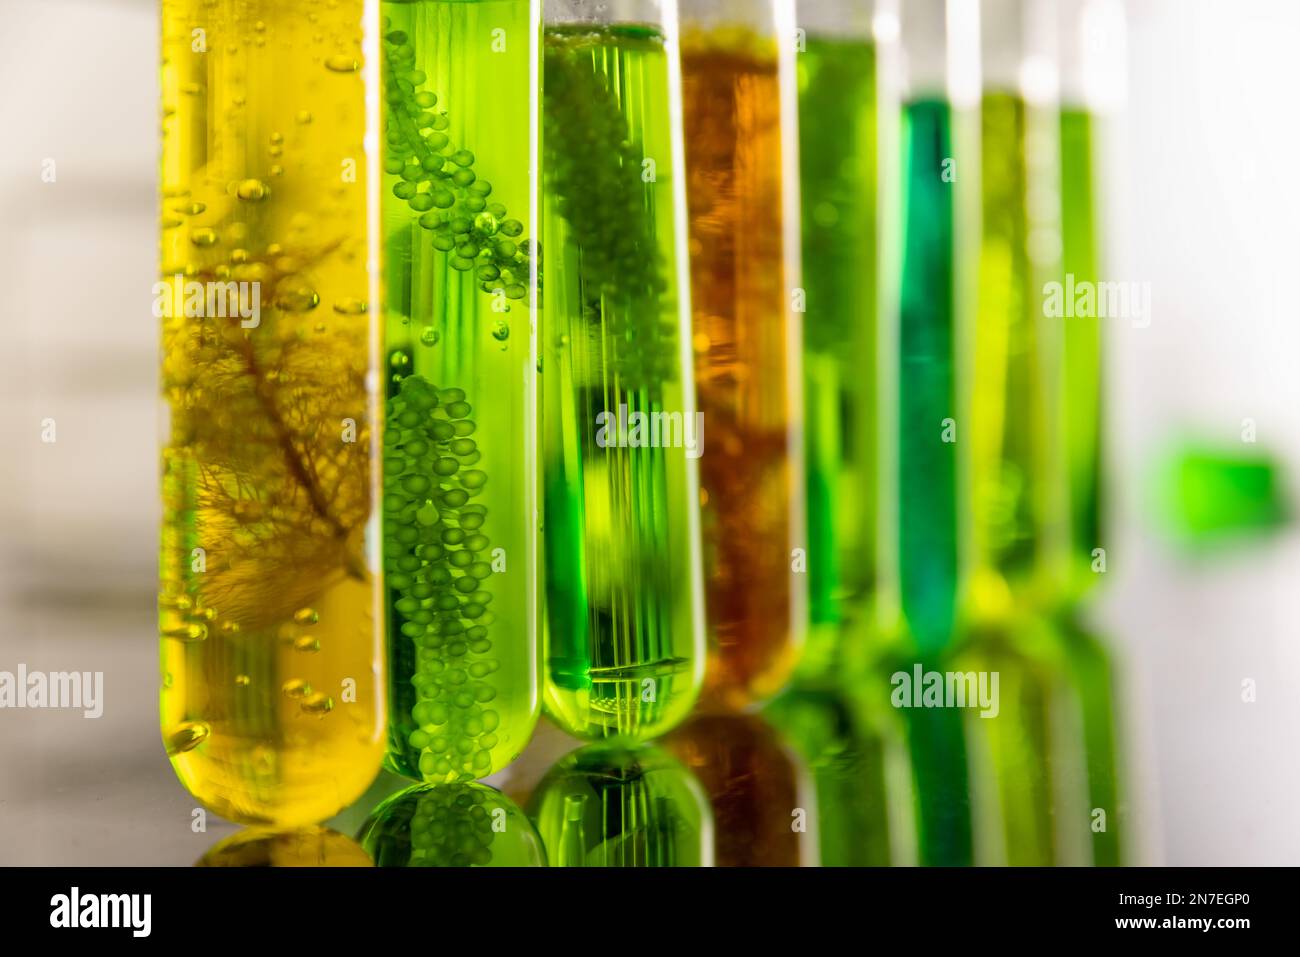 Le biocarburant algue a une faible empreinte carbone. Banque D'Images